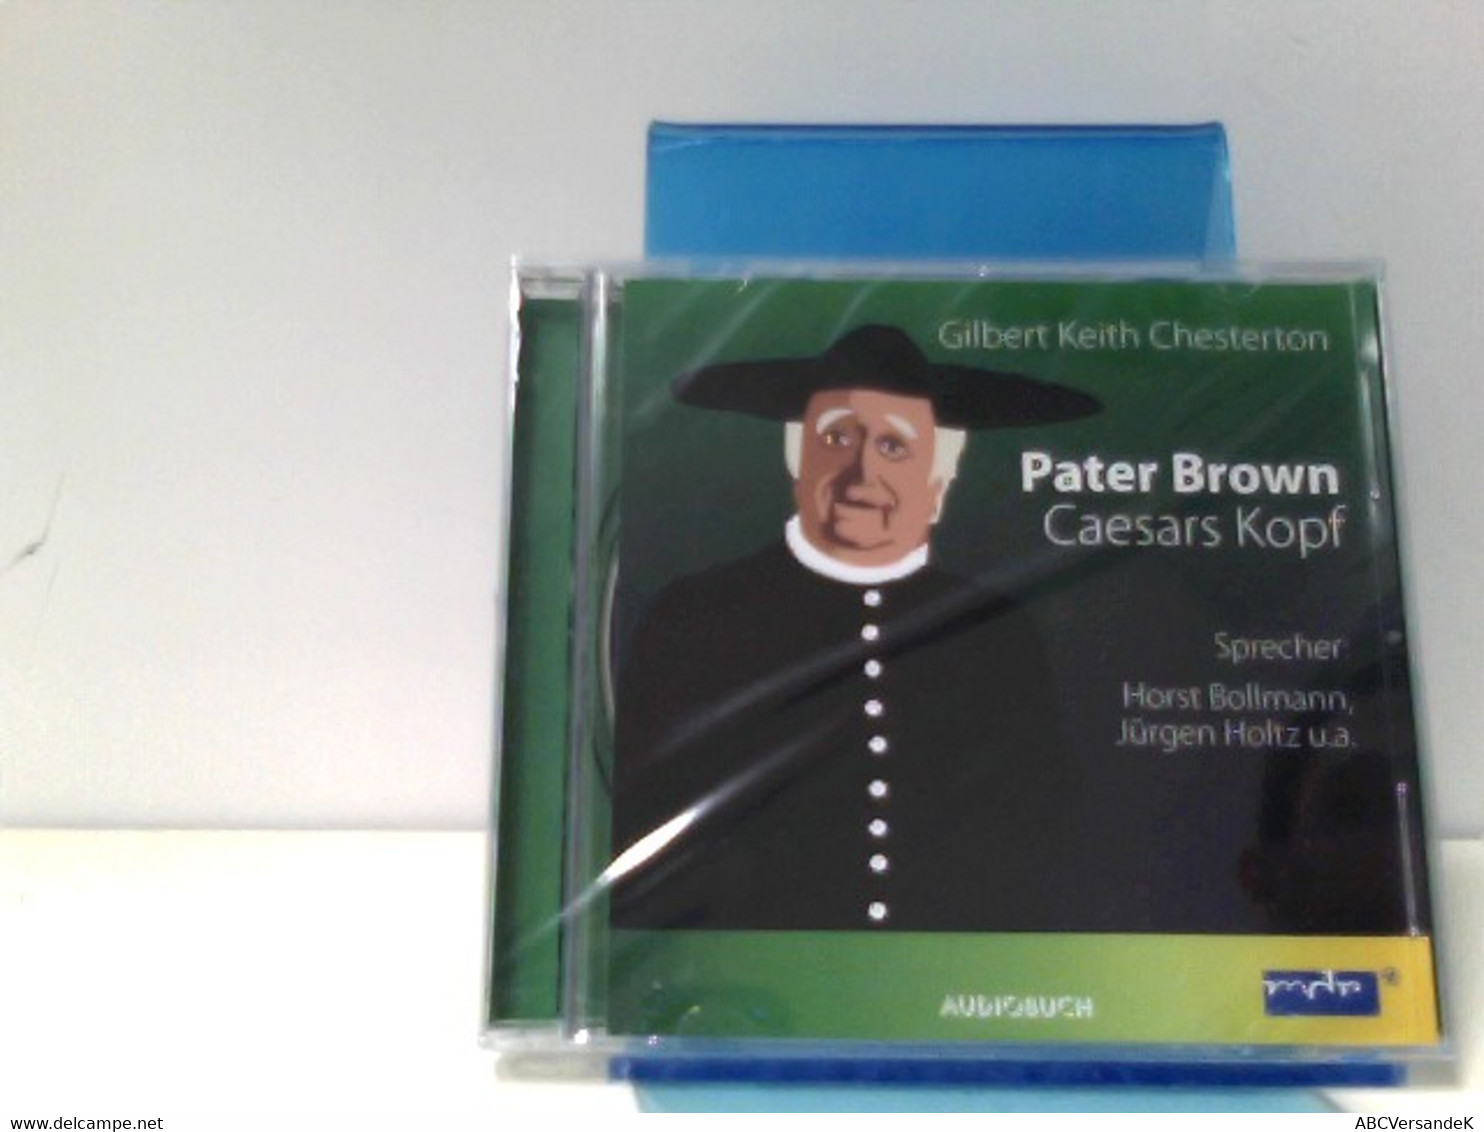 Pater Brown - Caesars Kopf - CDs